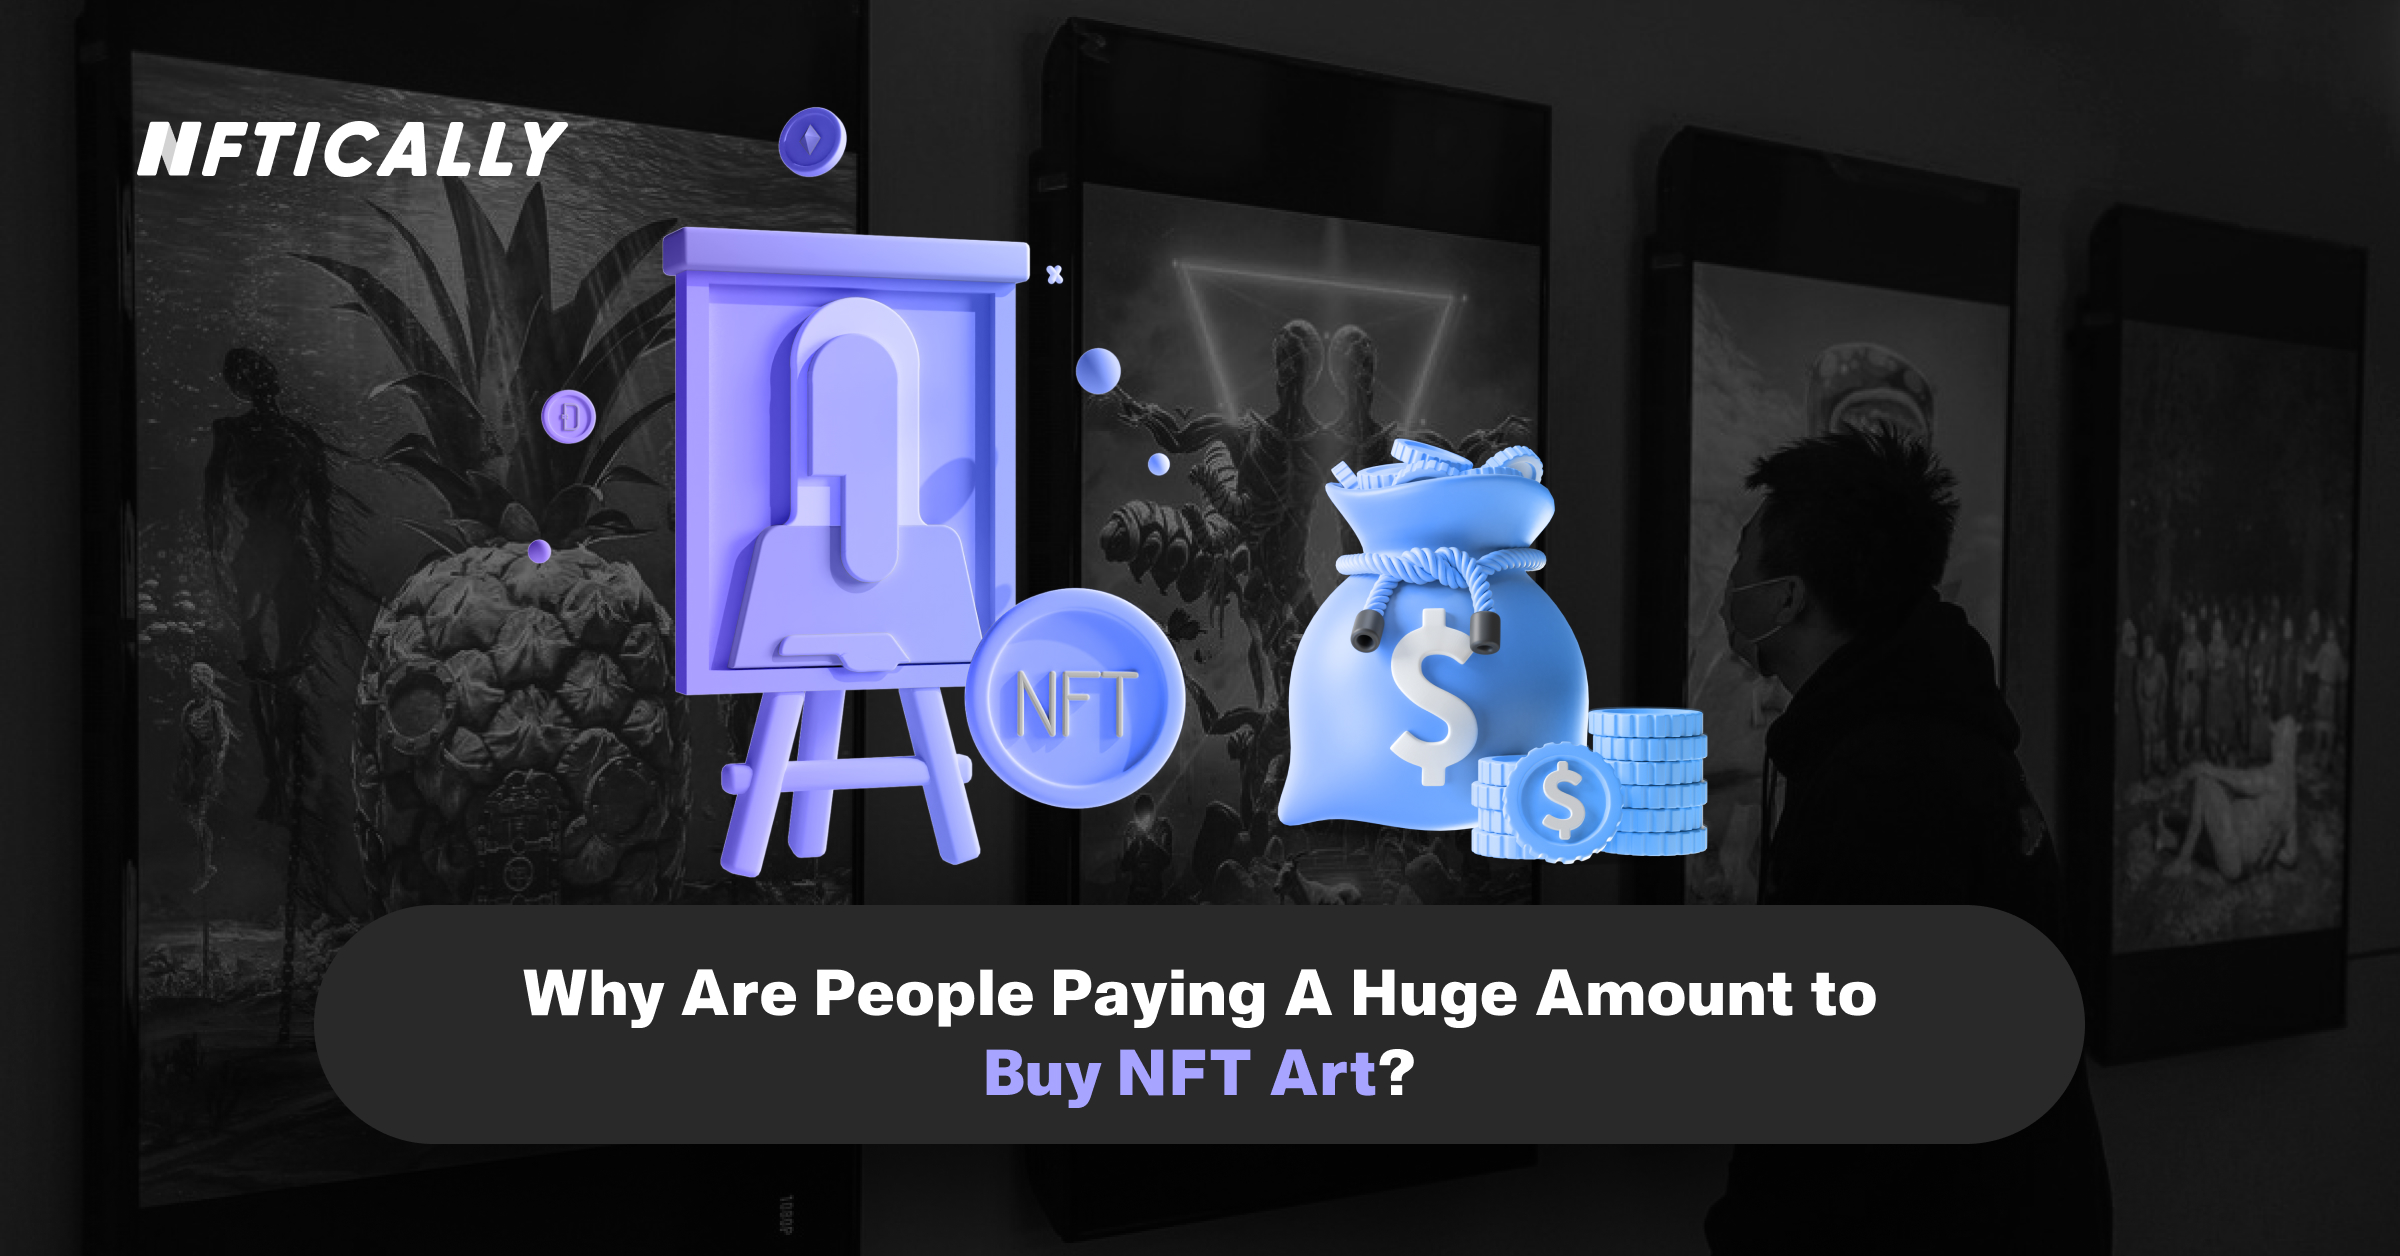 ¿Por qué la gente paga una cantidad enorme para comprar arte NFT?